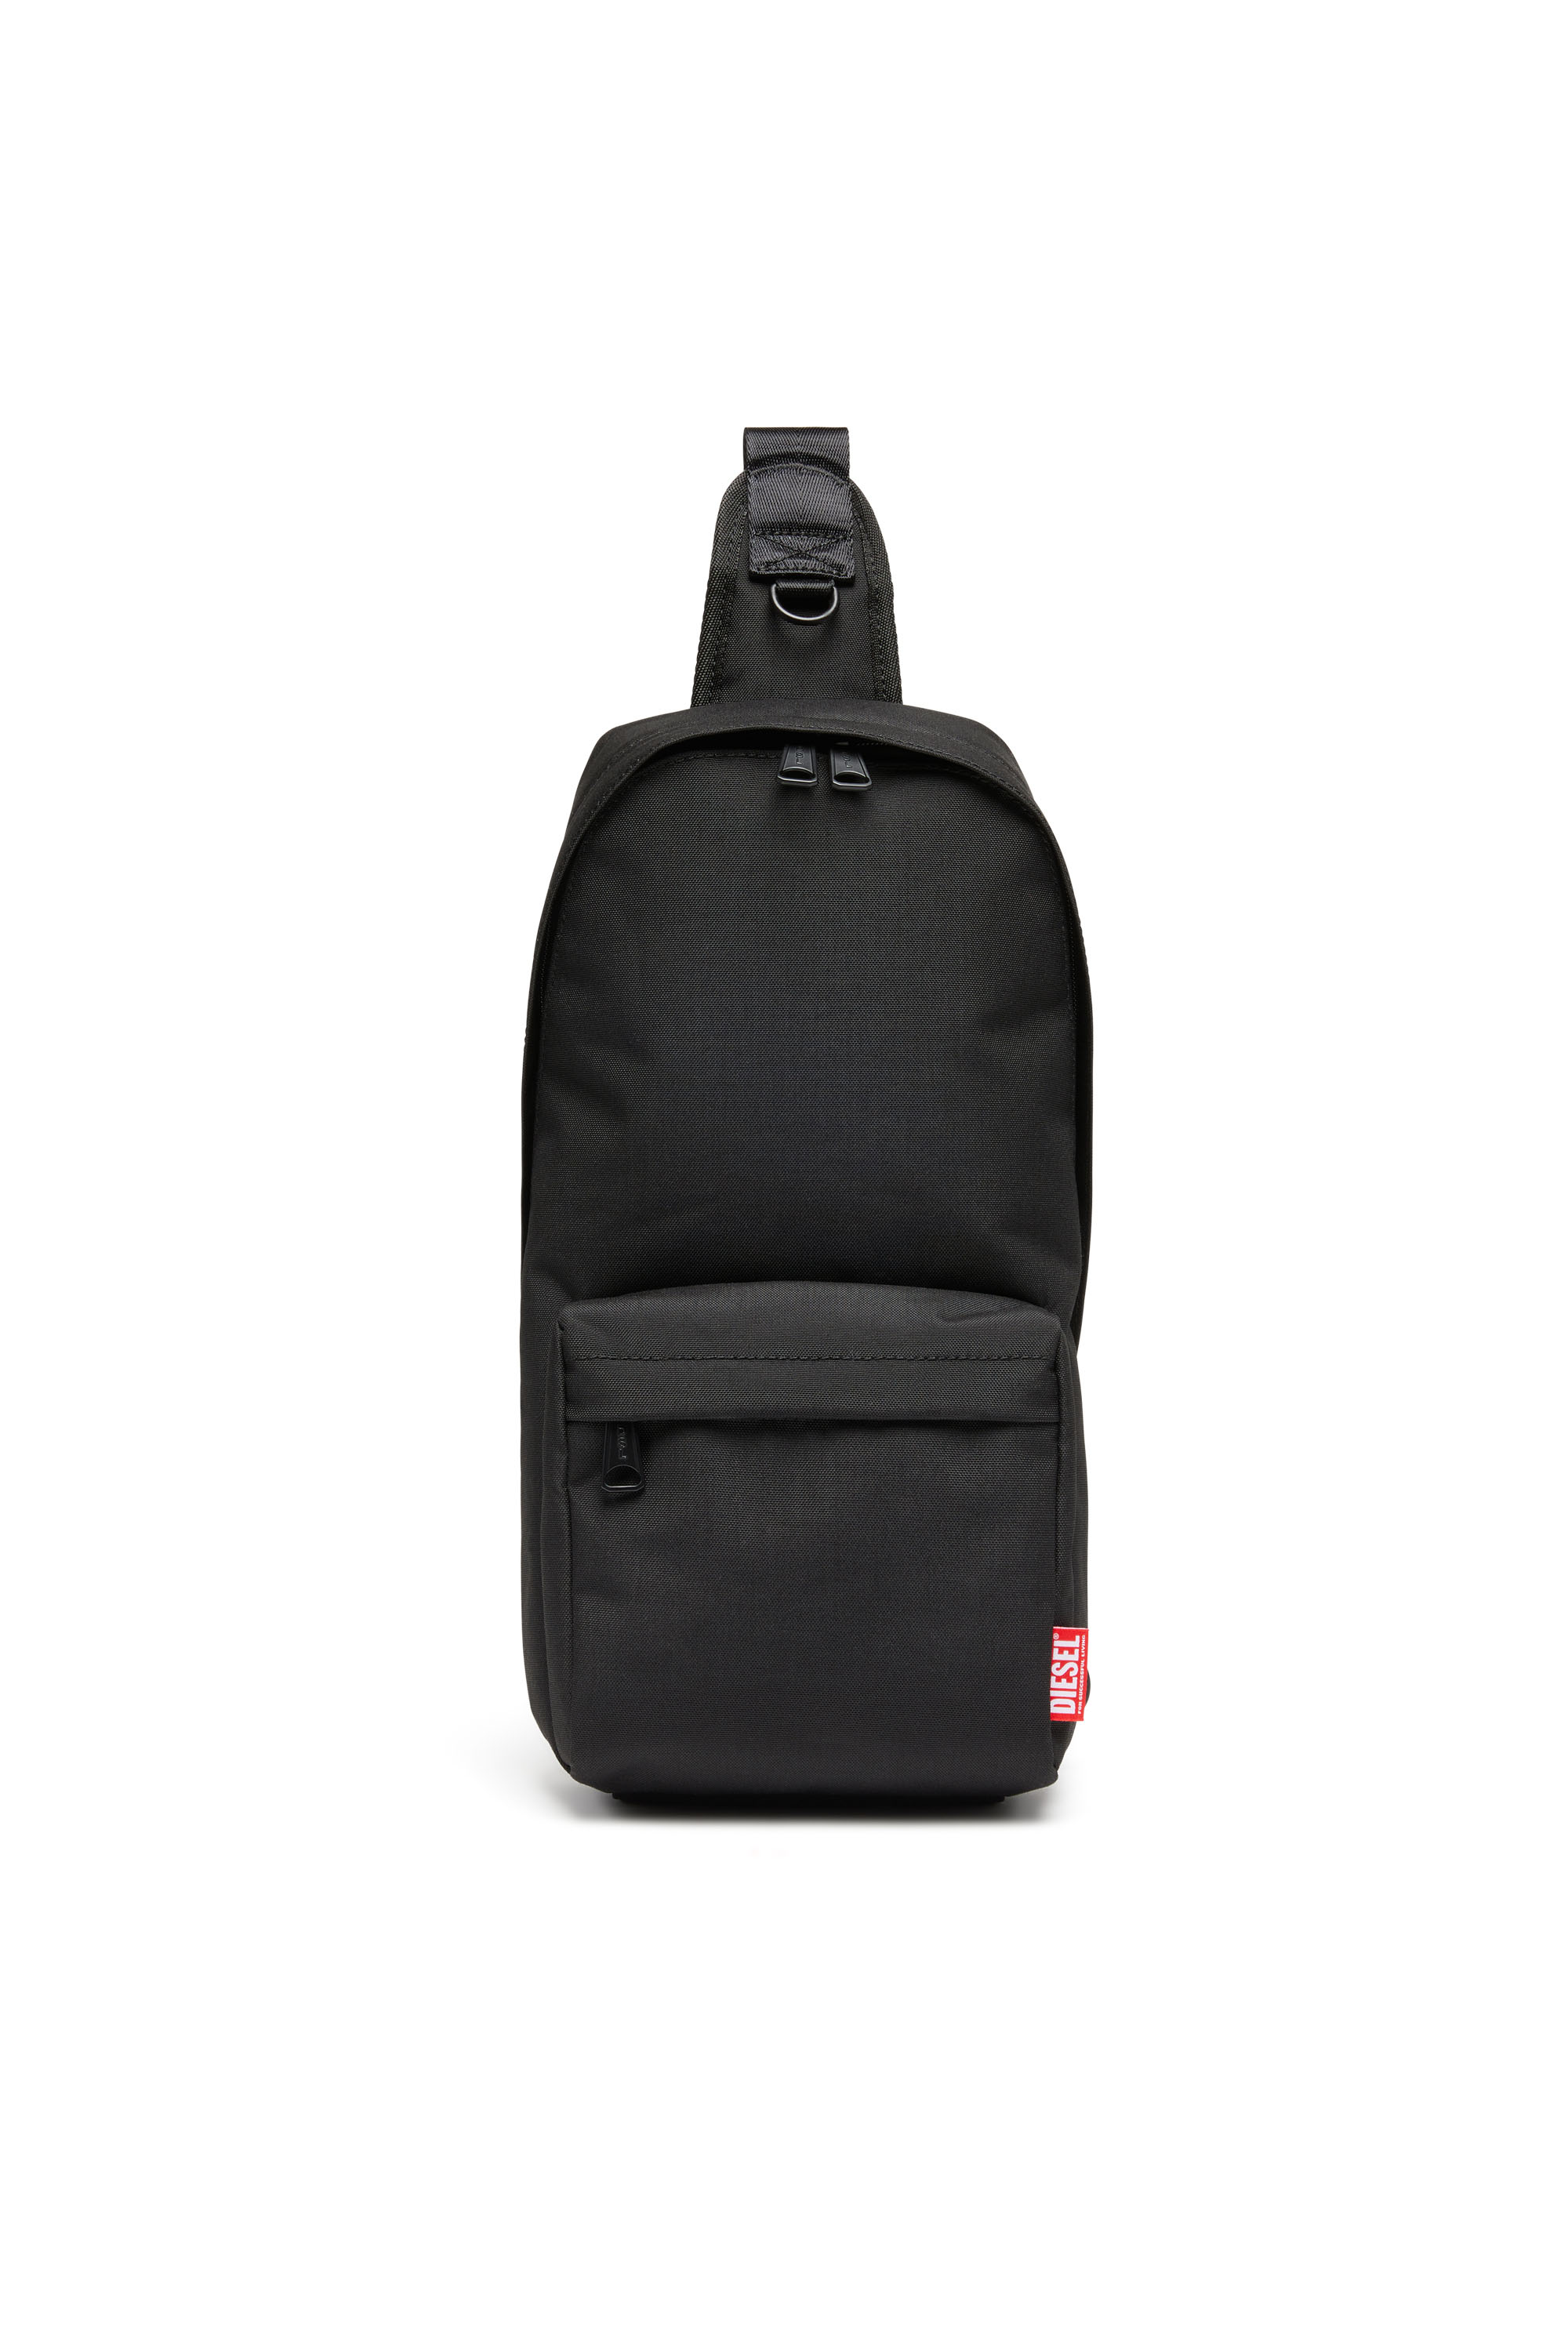 D-Bsc Sling Bag X - Sling backpack in heavy-duty shell